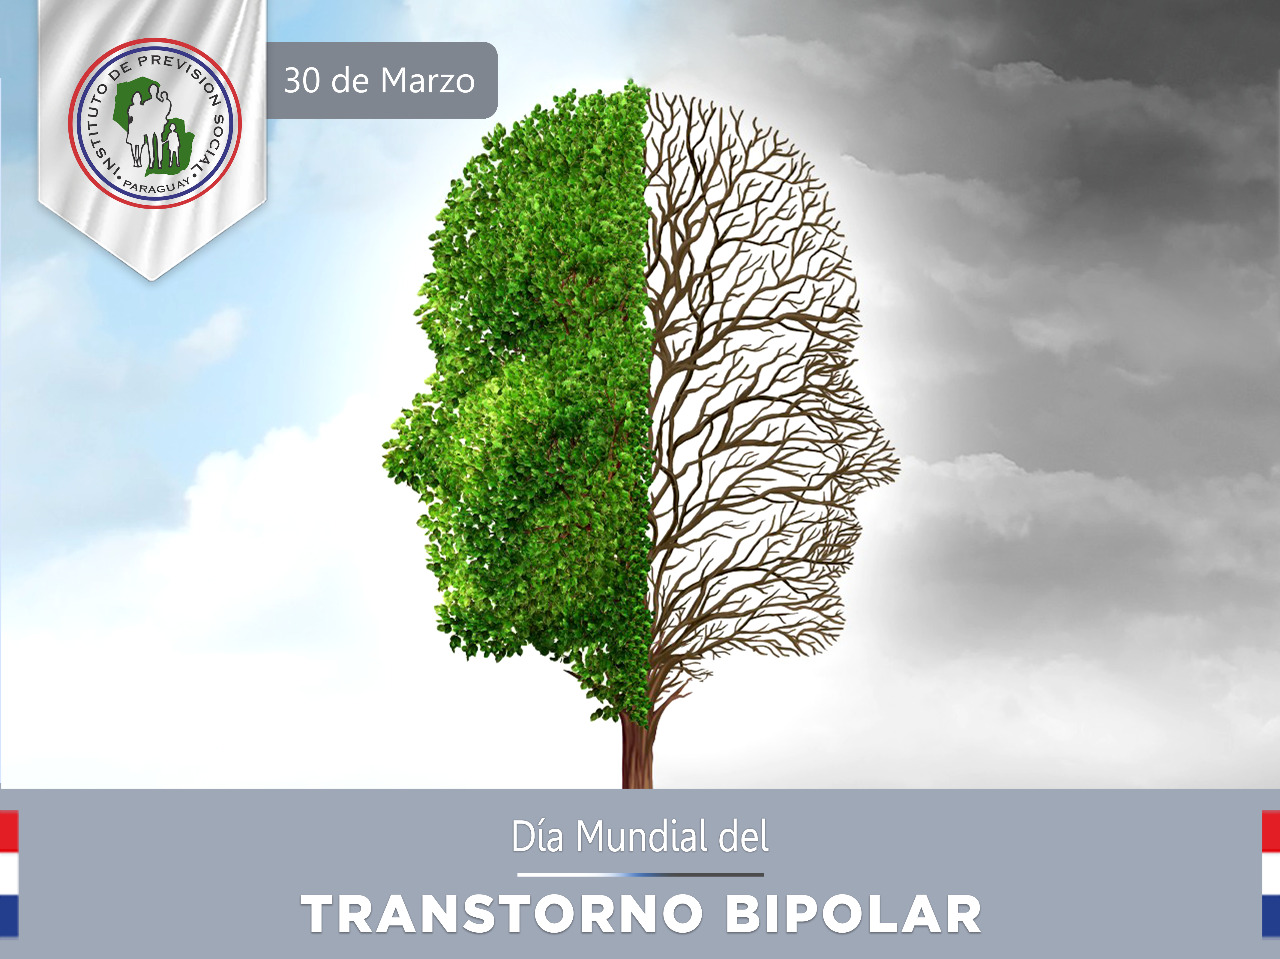 “Día Mundial del Trastorno Bipolar”